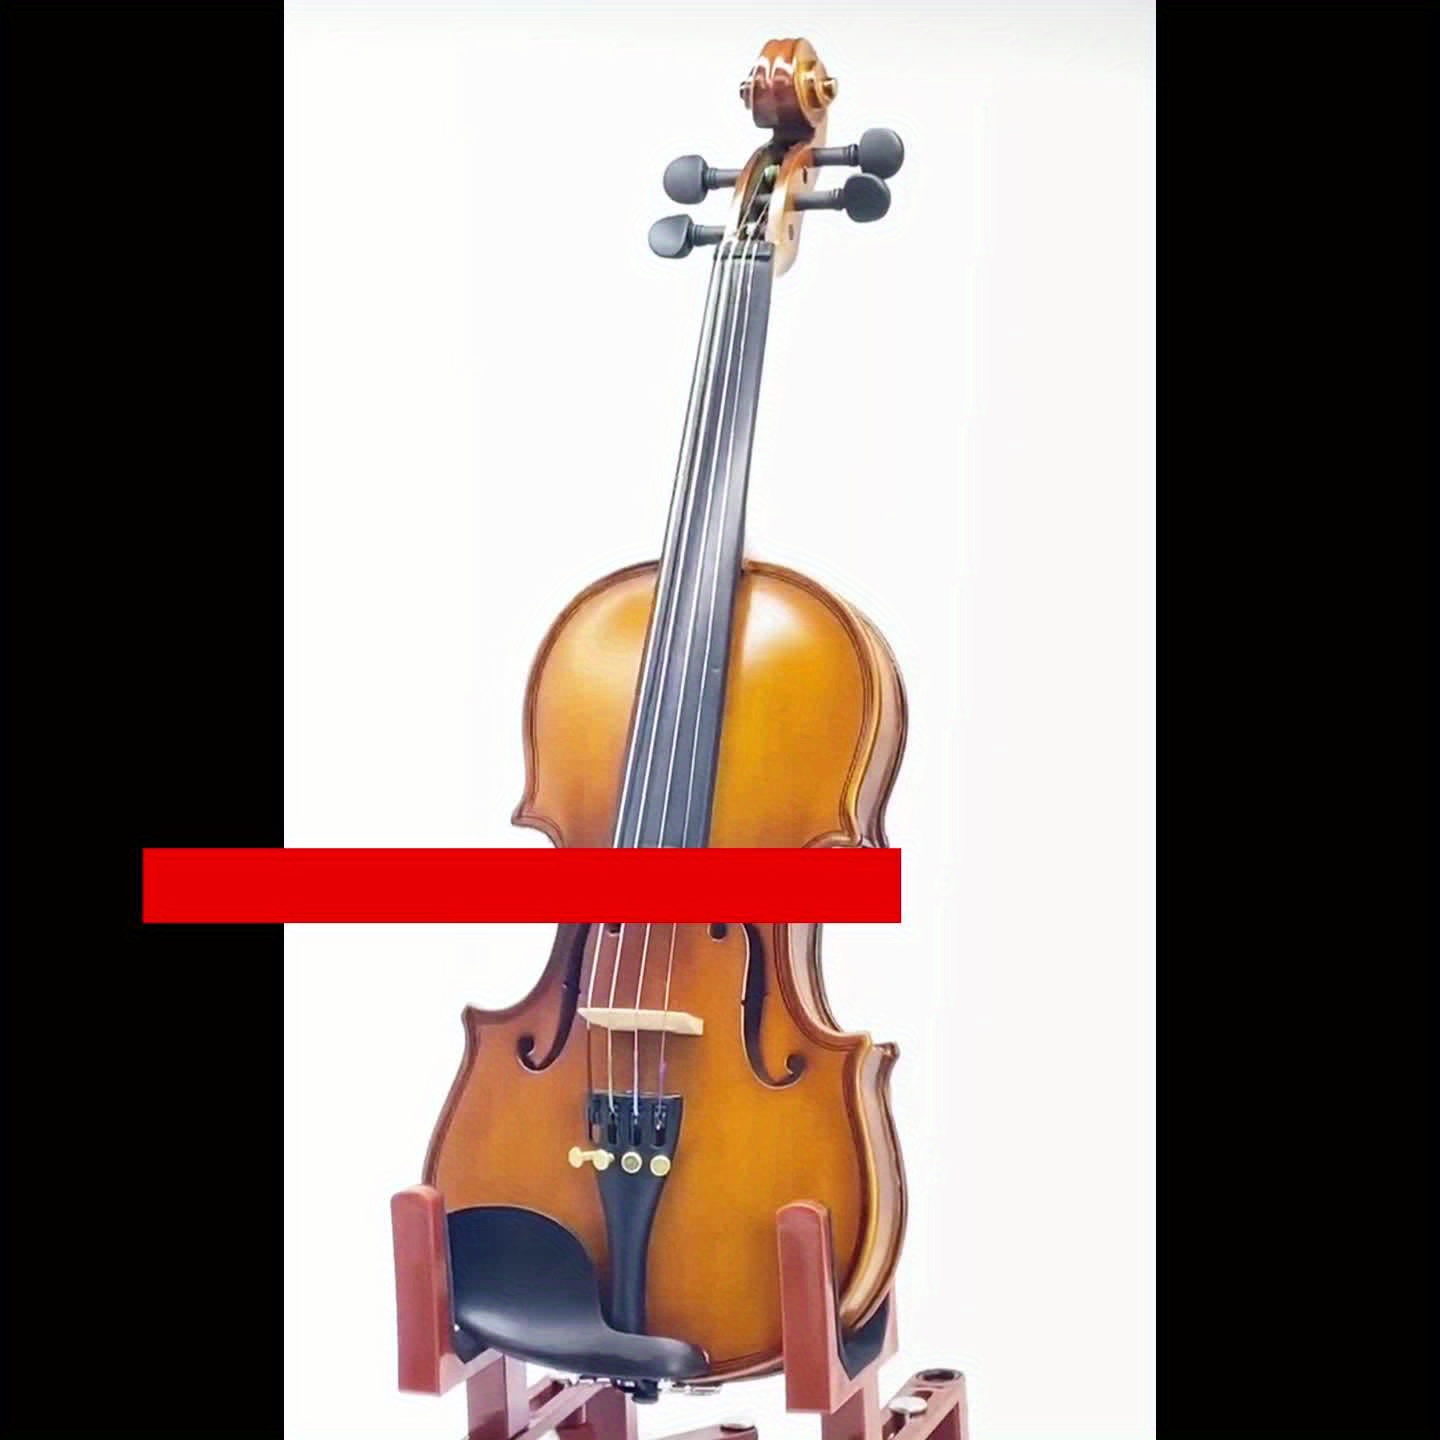 VL-205 4/4 Violin Acoustic Violin Fiddle Kit Spruce Starter Violins For  Beginner Adults Students, With Travel Hard Case, Bow, Extra Strings,  Shoulder